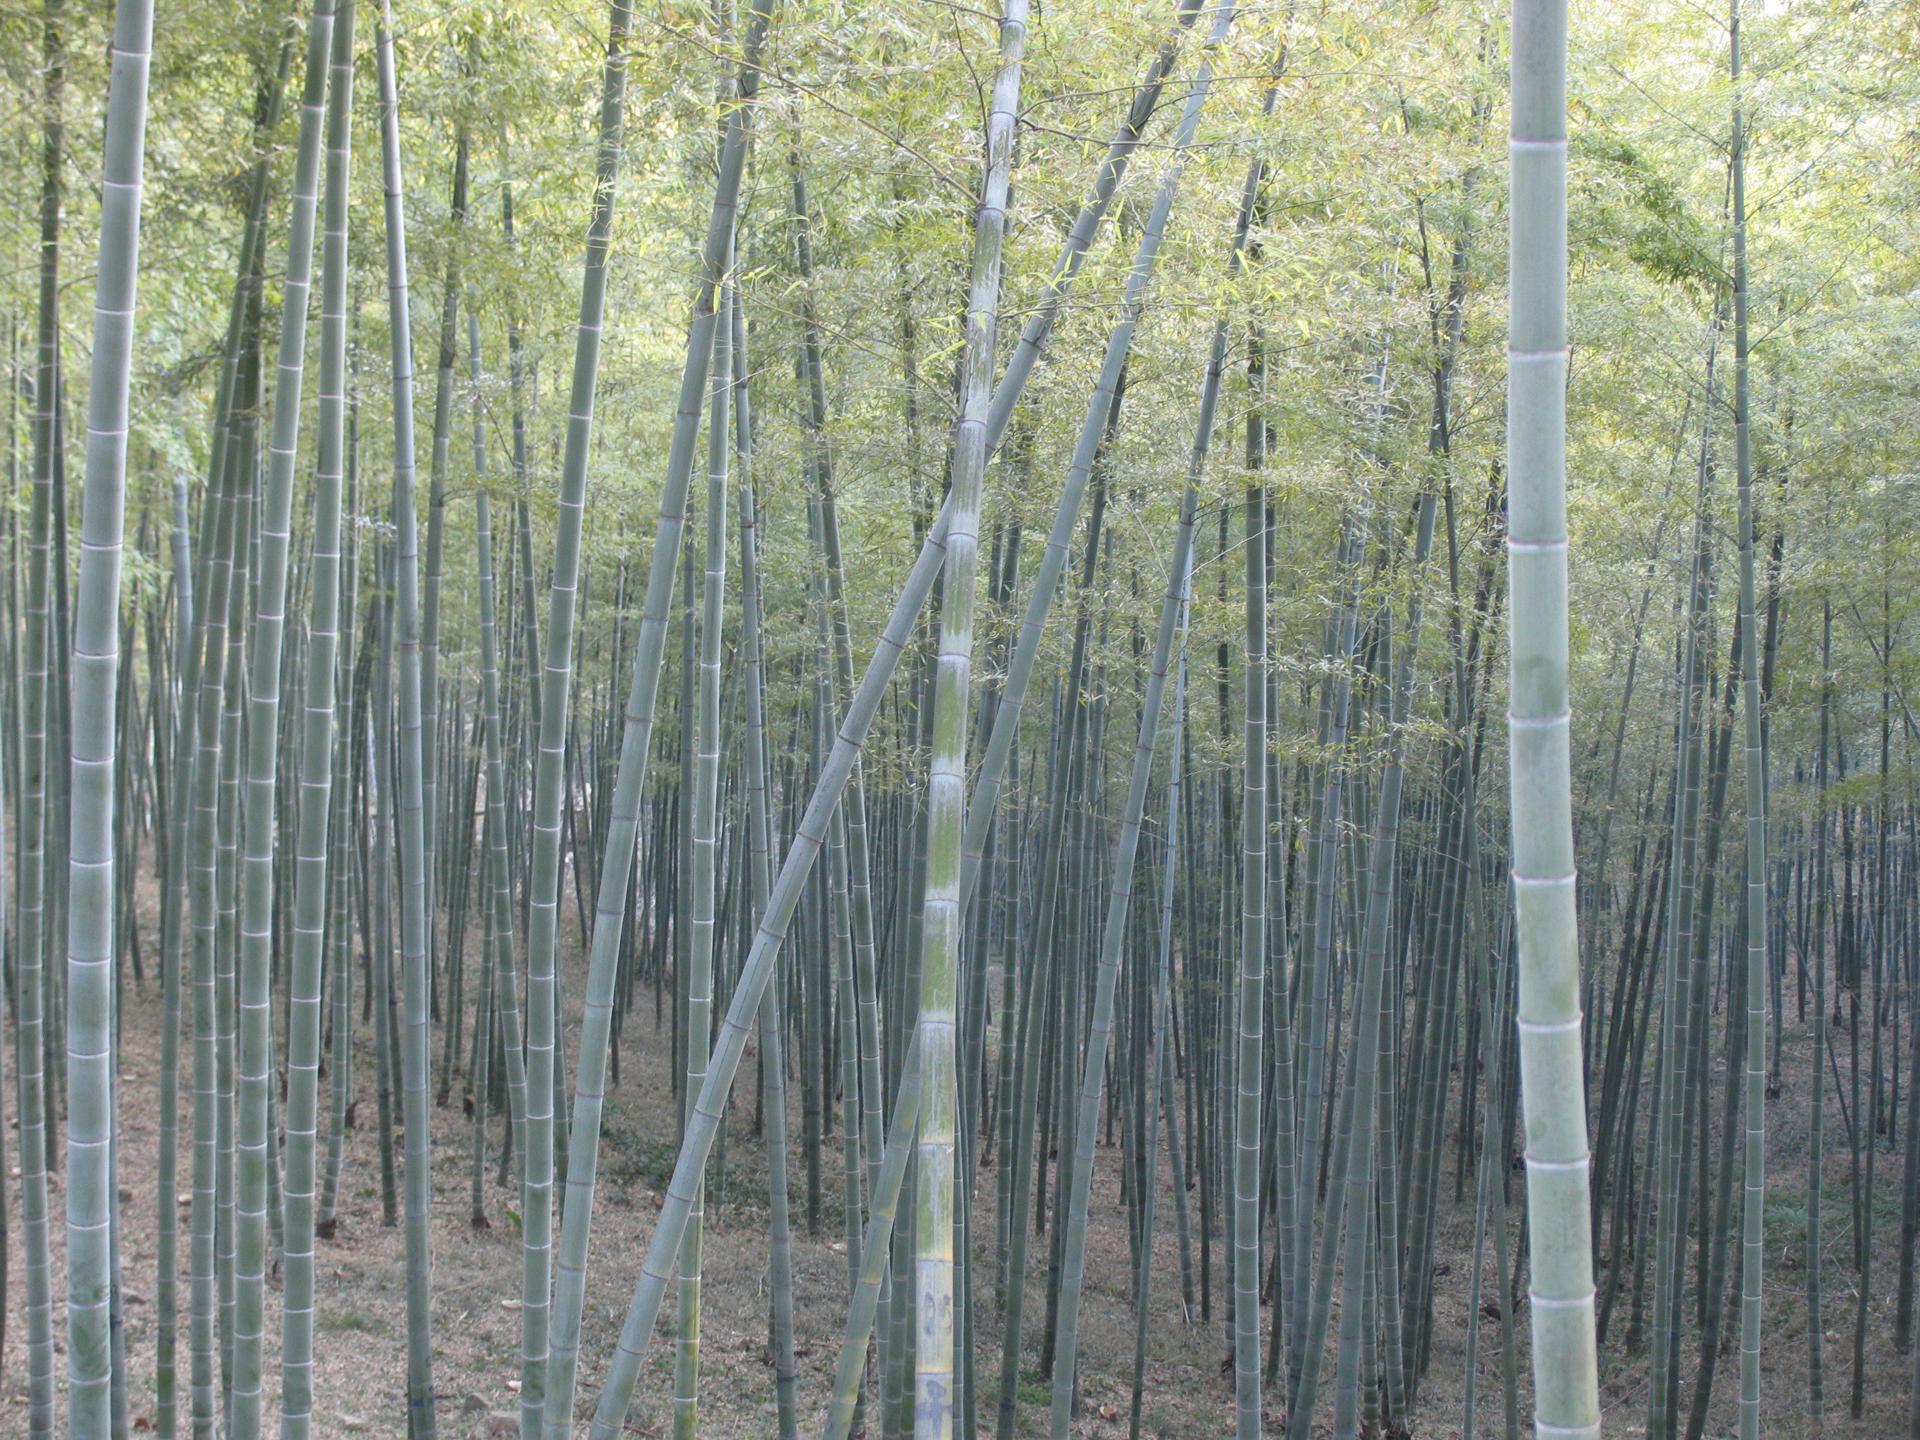 El bambú una alternativa (saludable y sostenible) para la alimentación humana